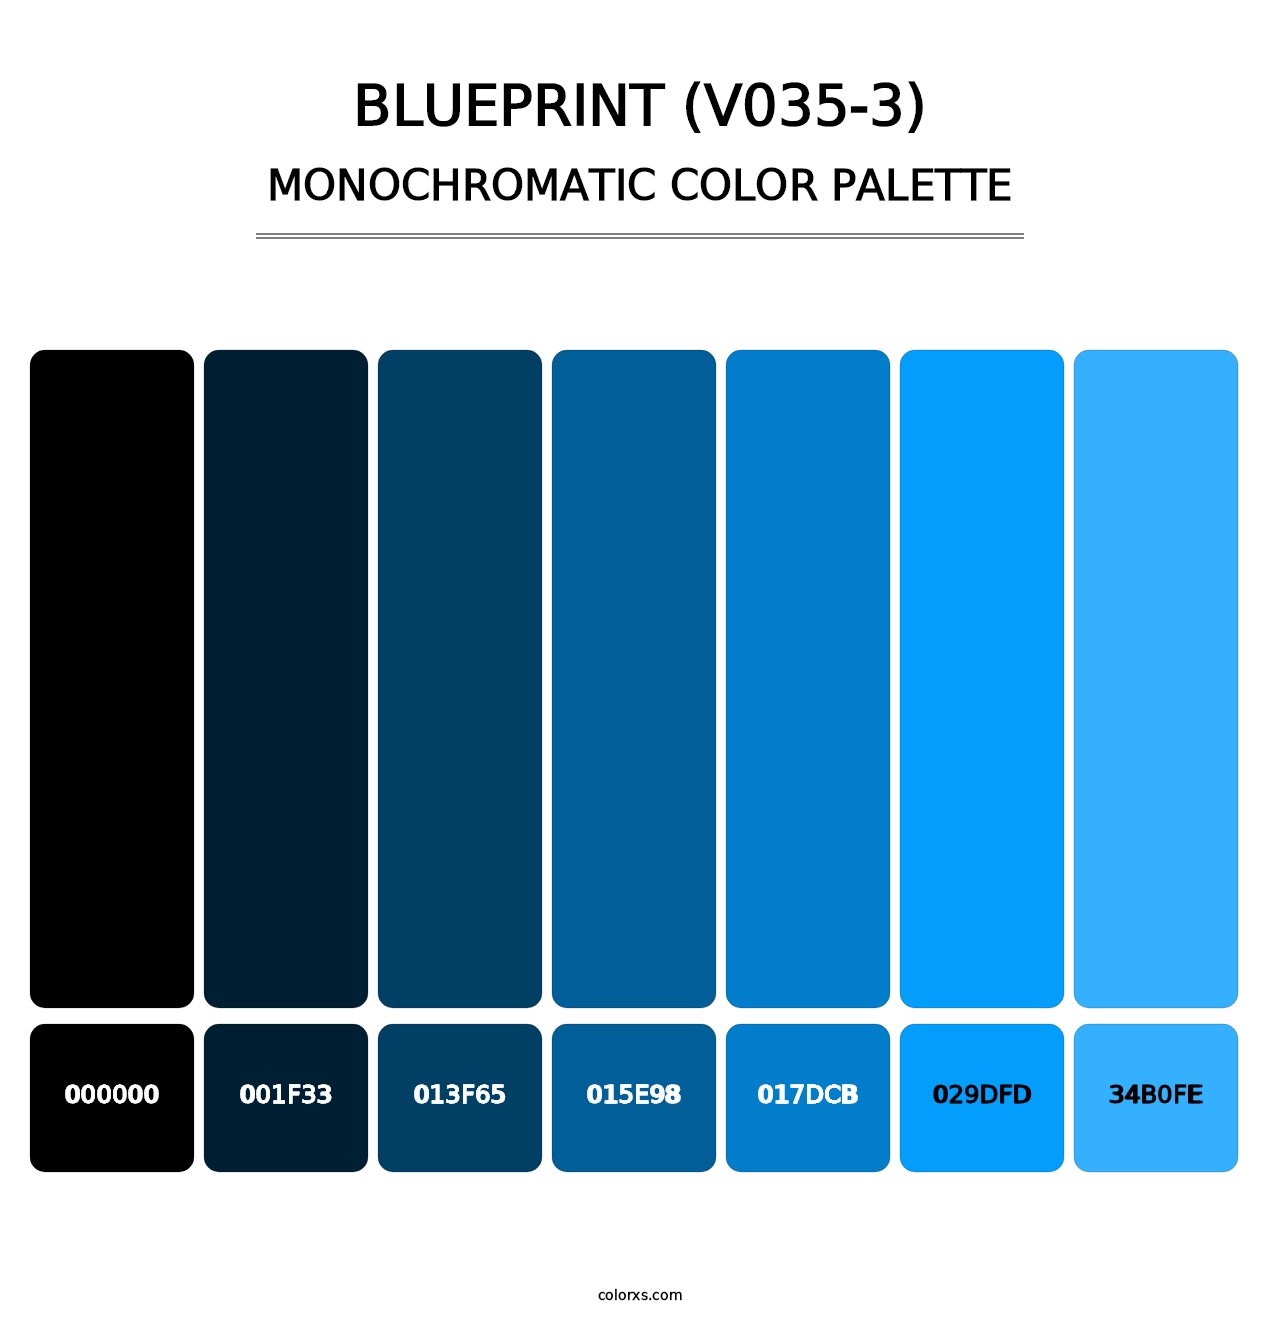 Blueprint (V035-3) - Monochromatic Color Palette